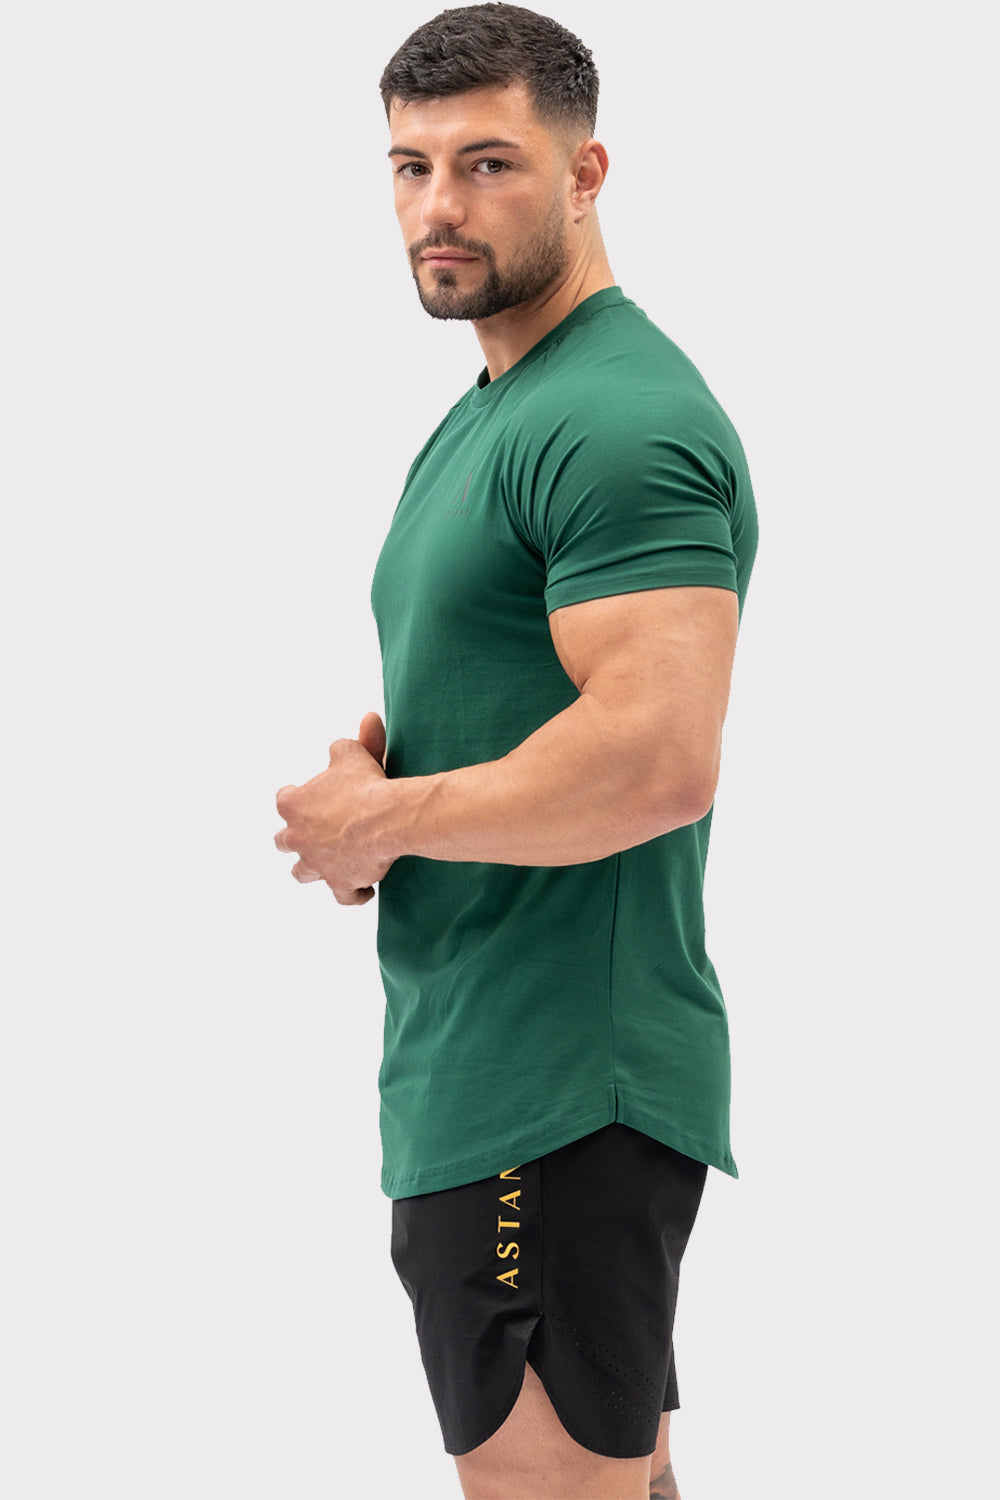 A CODE T-shirt - mørkegrønn